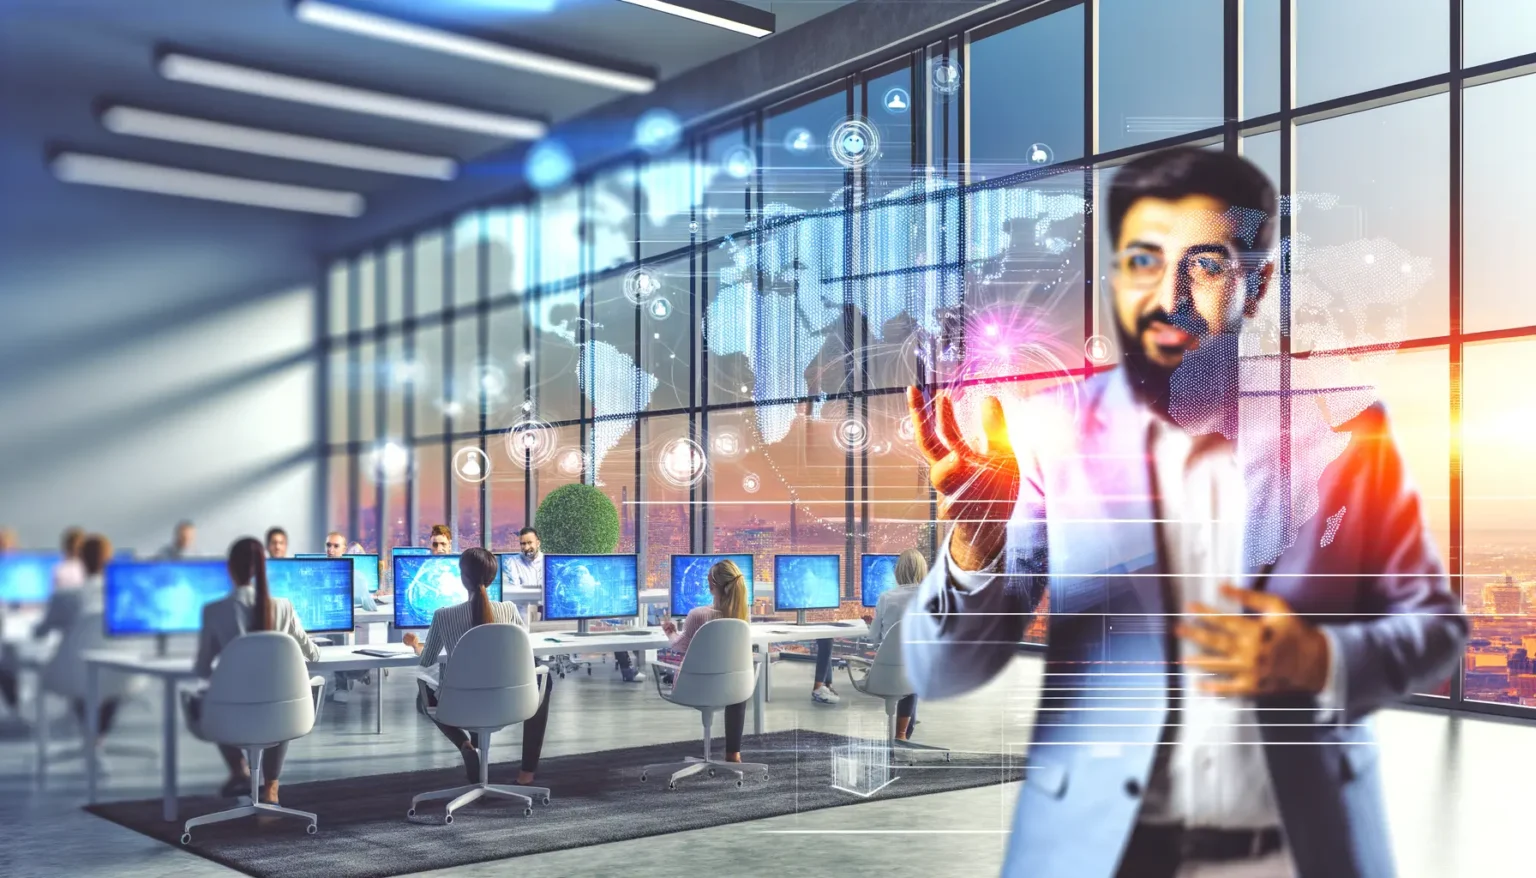 Ein Mann im Anzug steht im Vordergrund einer modernen Bürolandschaft, während er interaktiv mit futuristischen digitalen Interface-Elementen und einer Weltkarte agiert. Im Hintergrund arbeiten Menschen an Computern in einem hellen Raum mit Panoramafenstern, durch die die Stadtsilhouette zu sehen ist.